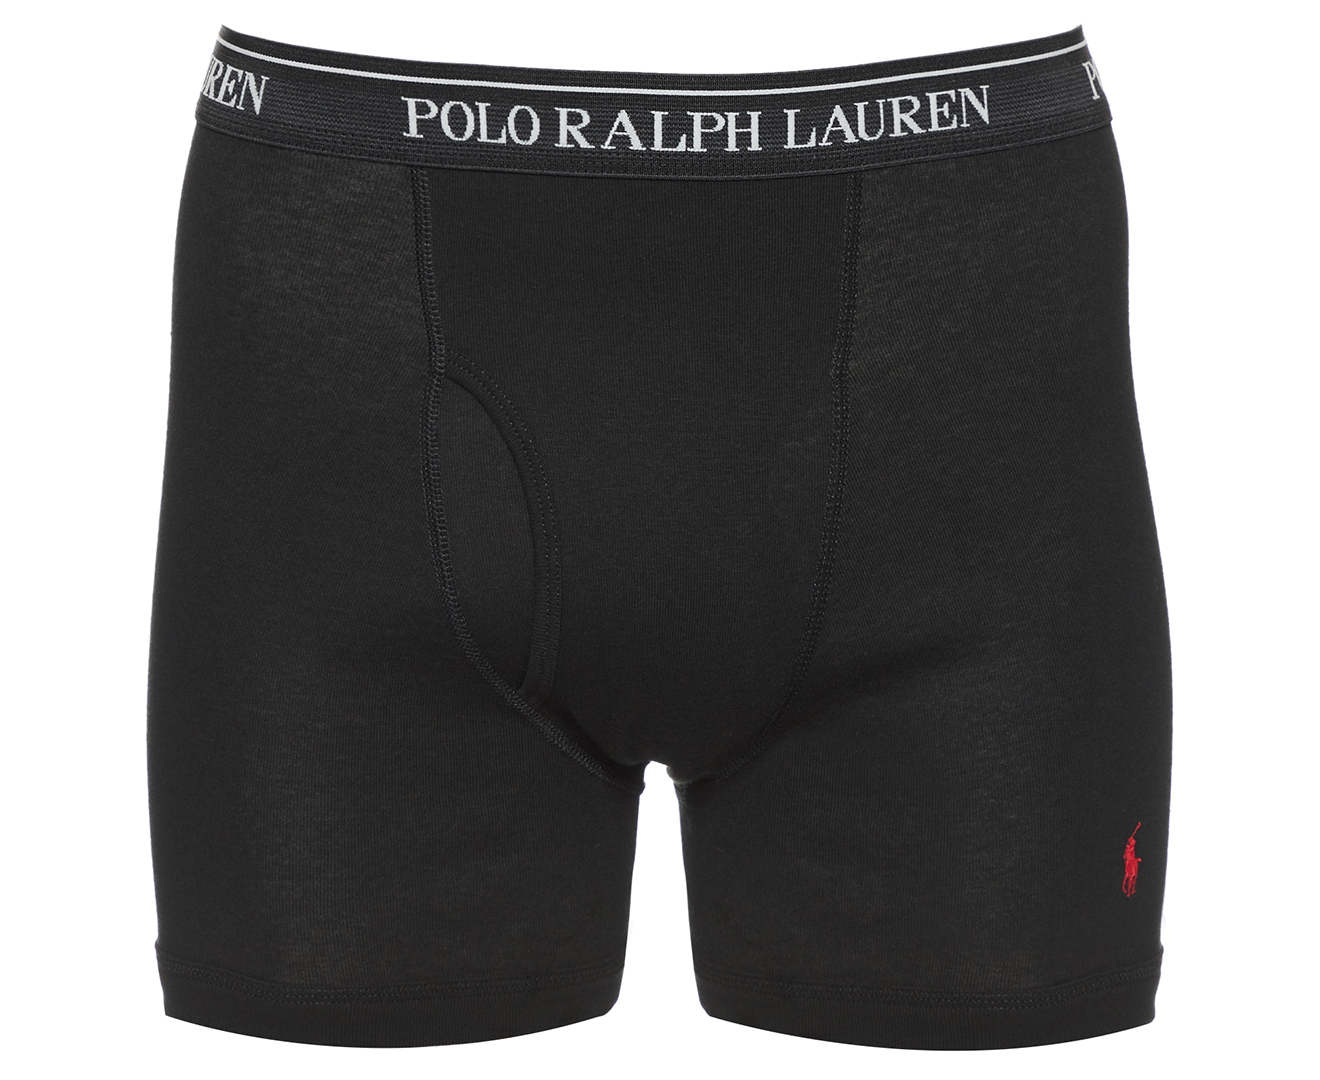 Polo Ralph Lauren Men's Classic Fit Boxer Briefs 3-Pack - Black | Catch ...